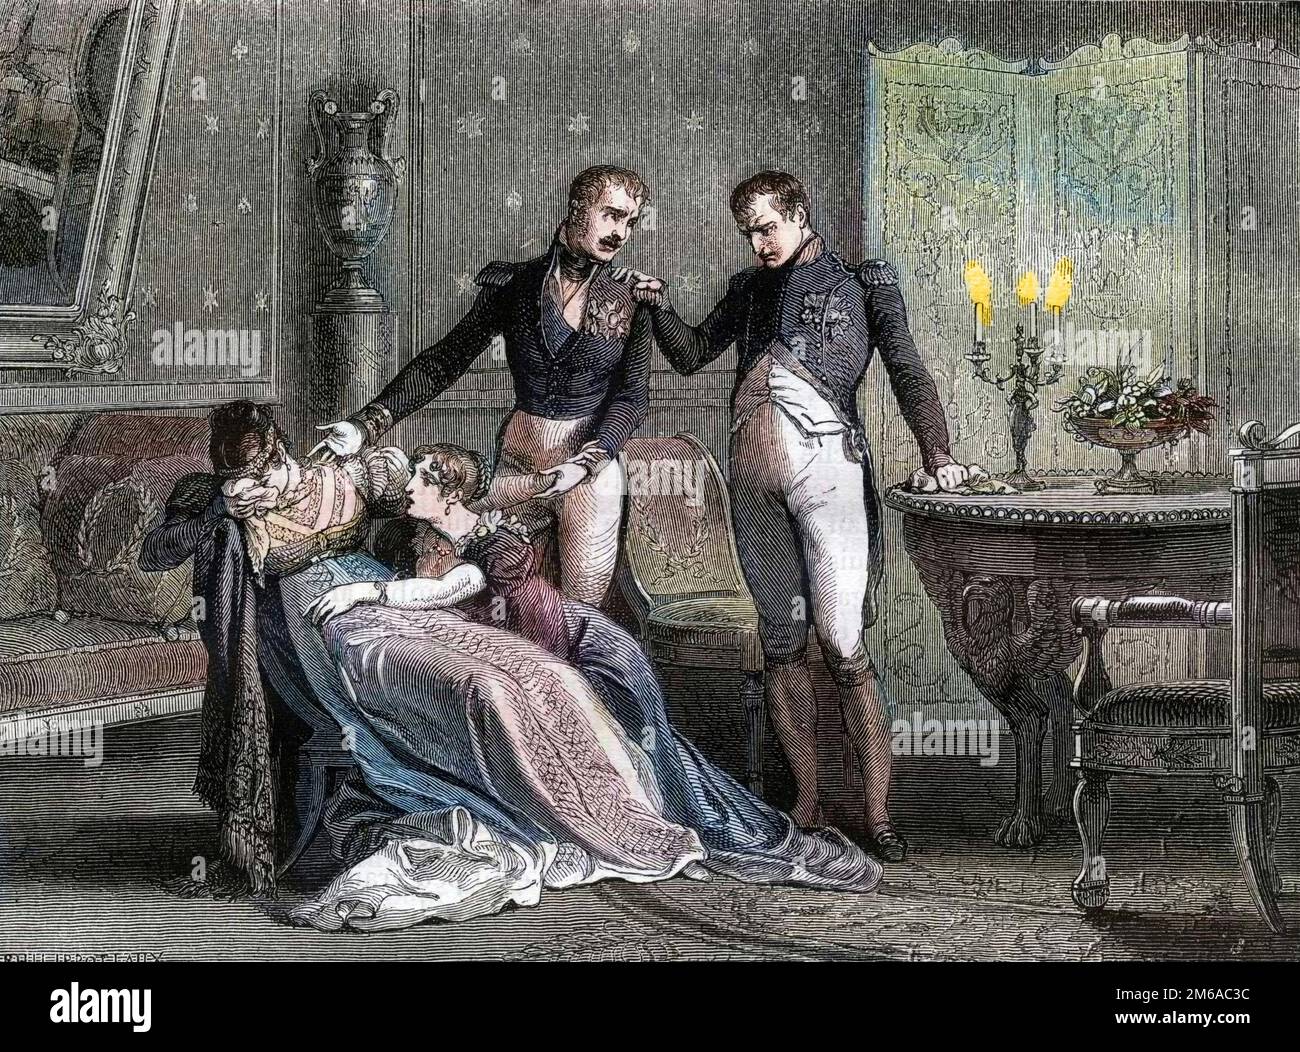 Napoleon verkündet Josephine den geplanten Tag für die Unterzeichnung der Scheidungspapiere, 1809 - Longue entrevue de famille dans laquelle le divorce est definitivement convenu entre Napoleon et Josephine le 30 novembre 1809 - Gravure de 1879 Stockfoto